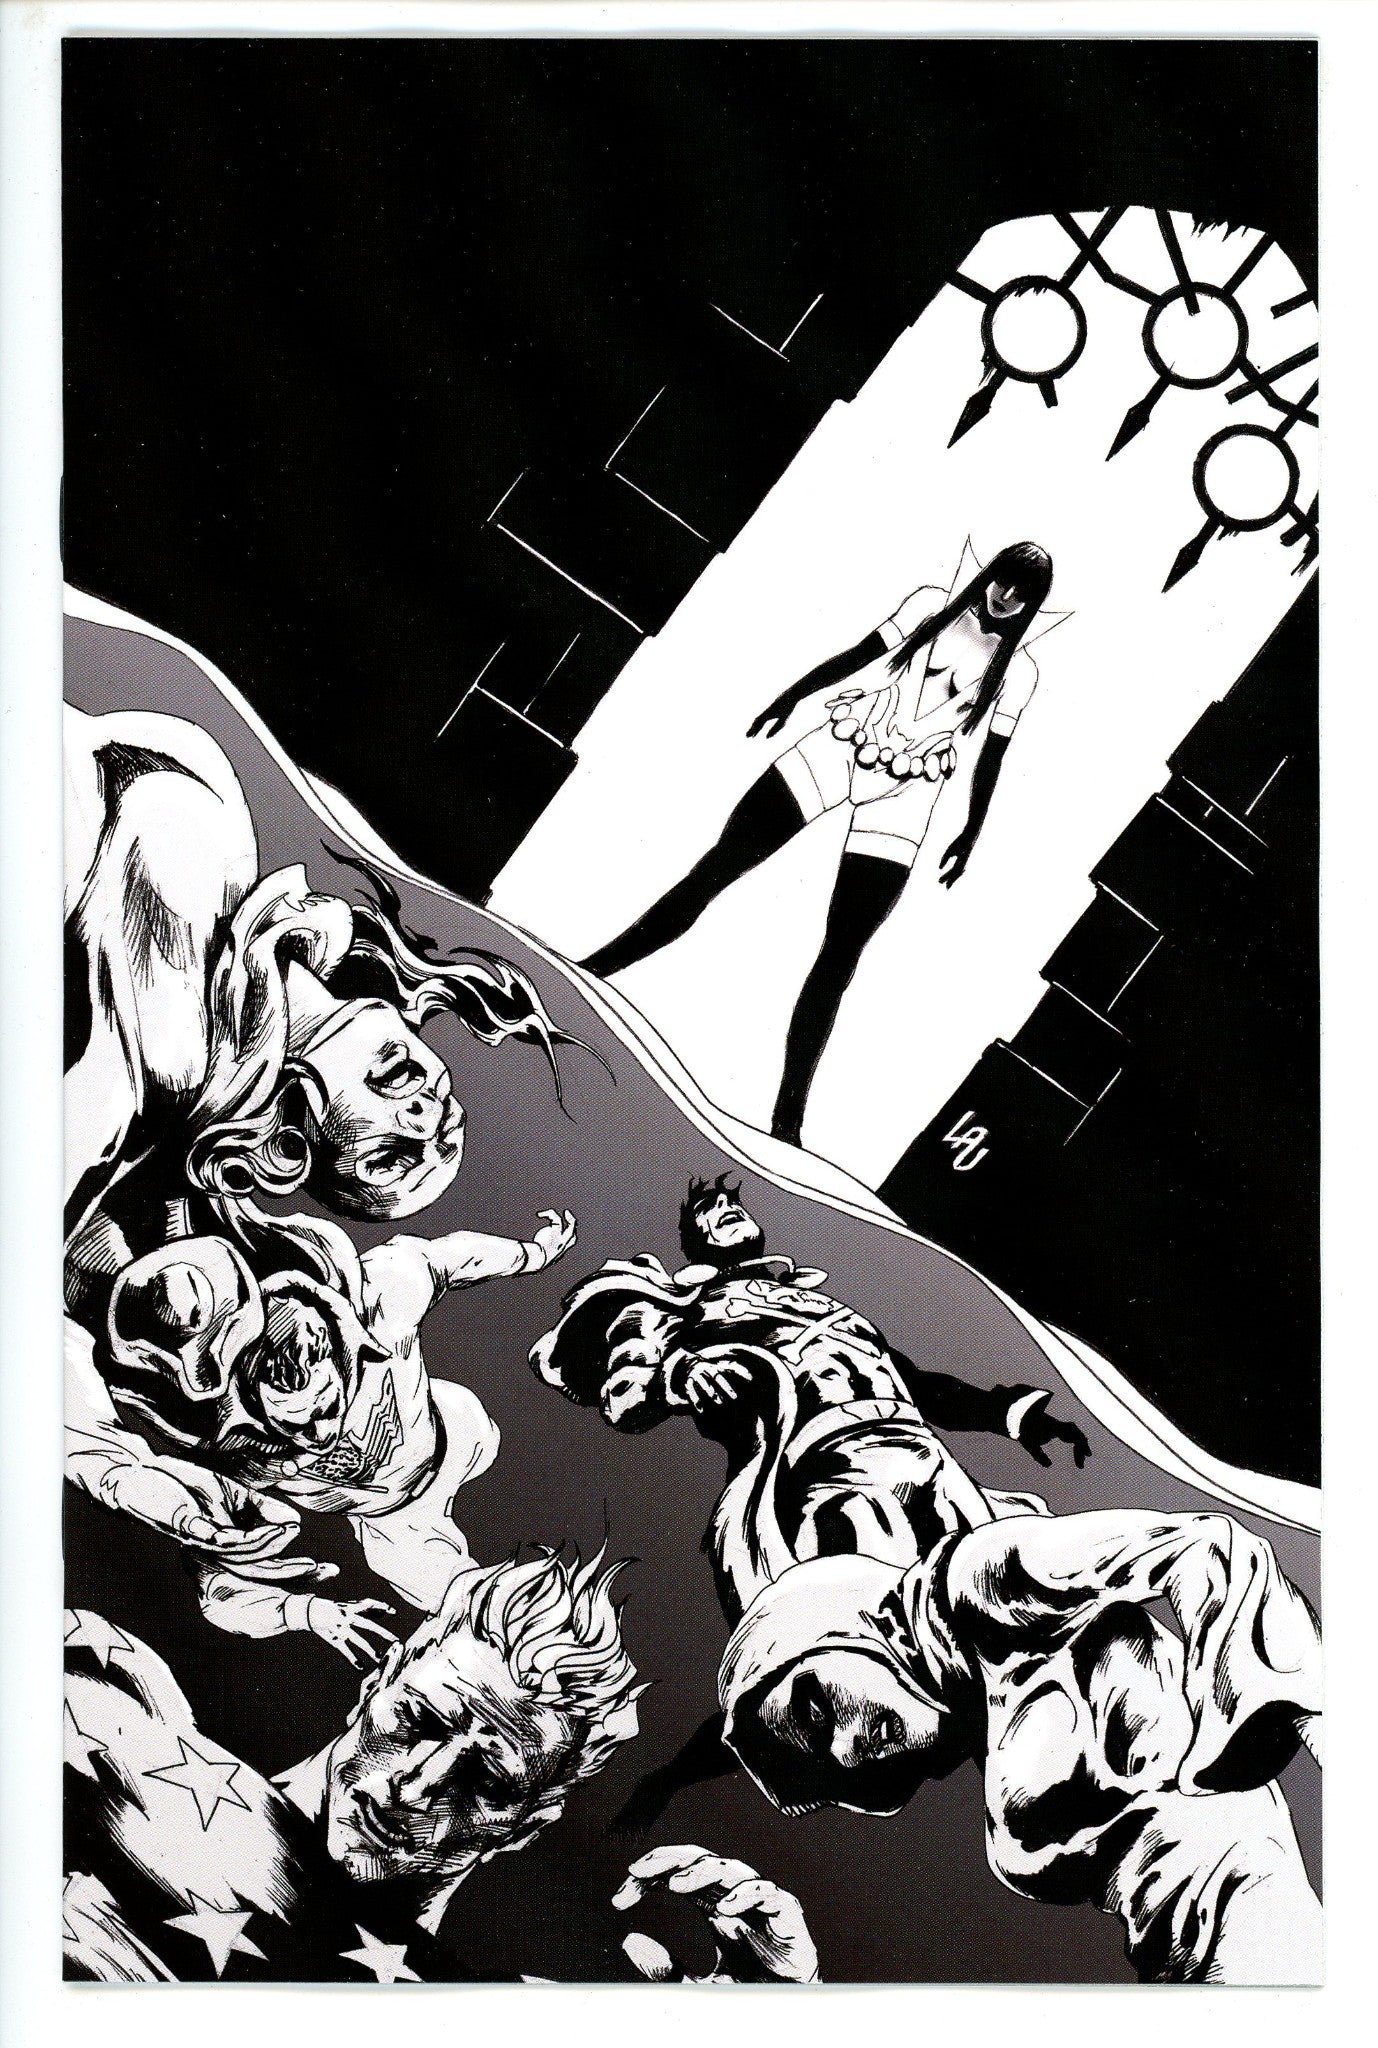 Vampirella Dark Powers 5 Lau Variant-CaptCan Comics Inc-CaptCan Comics Inc